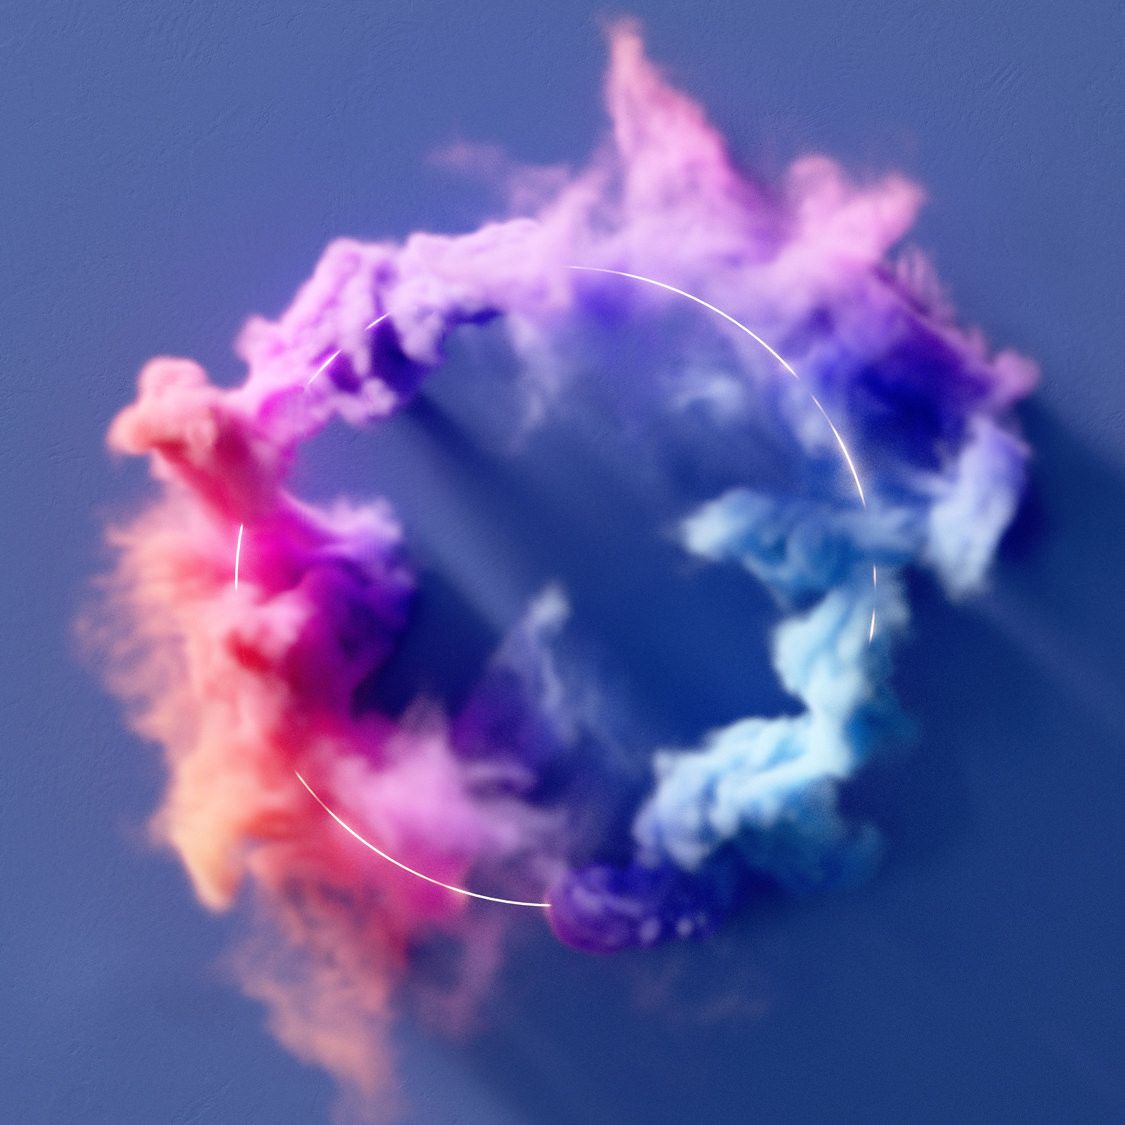 Abstraktes Bild mit einem Ring und Farbwolken zur Verdeutlichung von Corporate Design